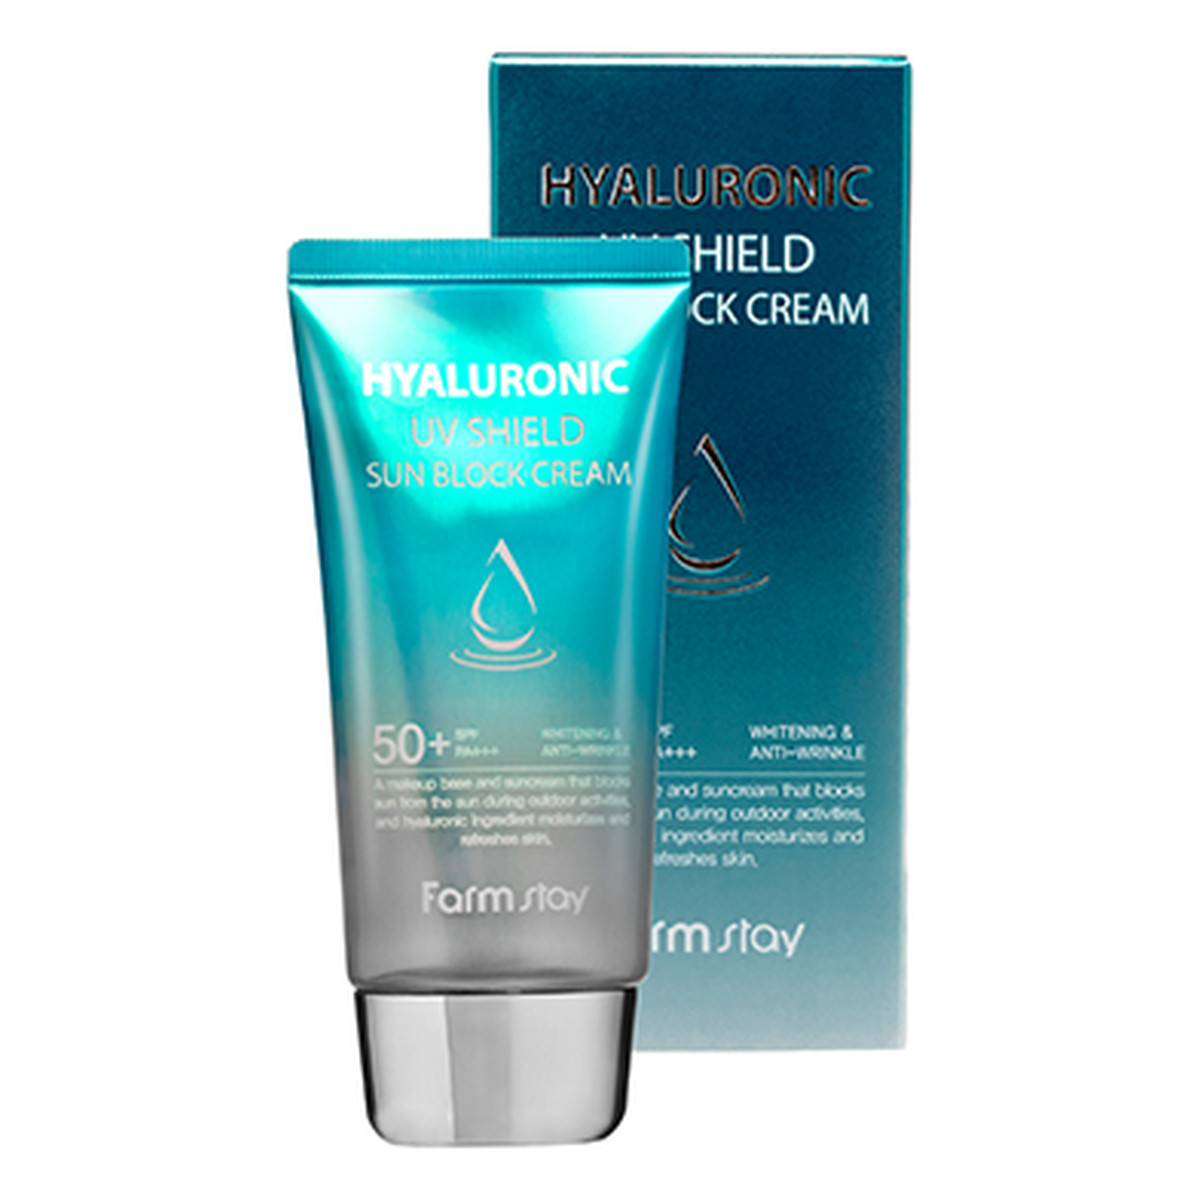 Farmstay Hyaluronic UV Shield Sun Block Cream SPF50+ kremowy bloker przeciwsłoneczny z kwasem hialuronowym 70g